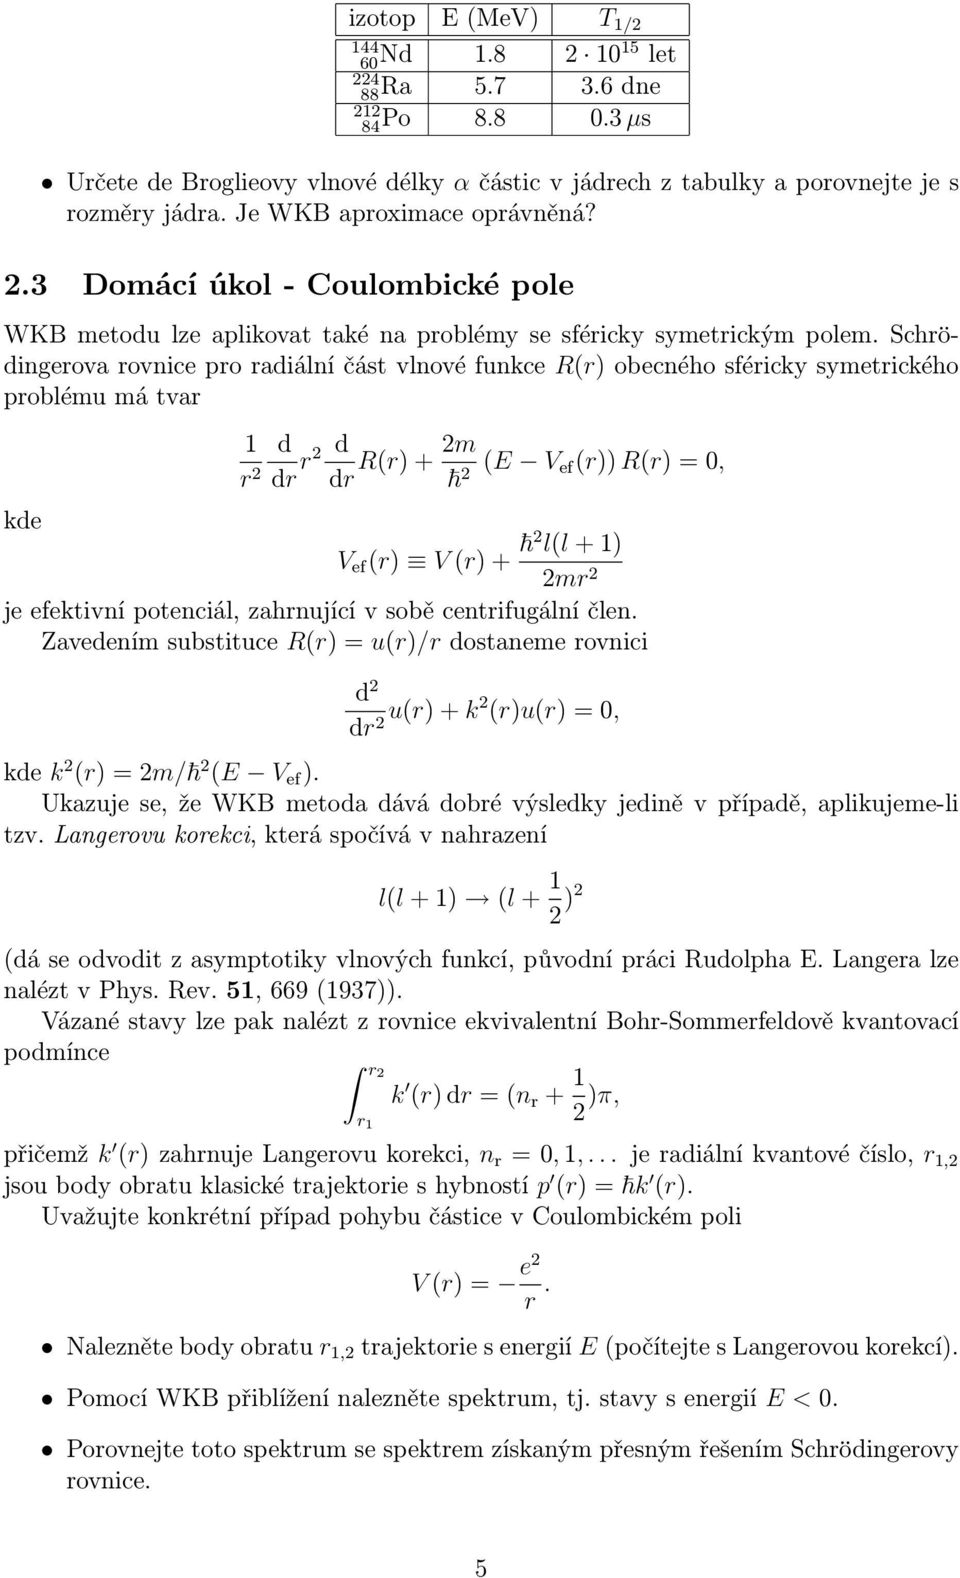 Schrödingerova rovnice pro radiální část vlnové funkce Rr) obecného sféricky symetrického problému má tvar kde r d dr r d dr Rr)+m E V efr))rr), V ef r) Vr)+ ll+) mr je efektivní potenciál,